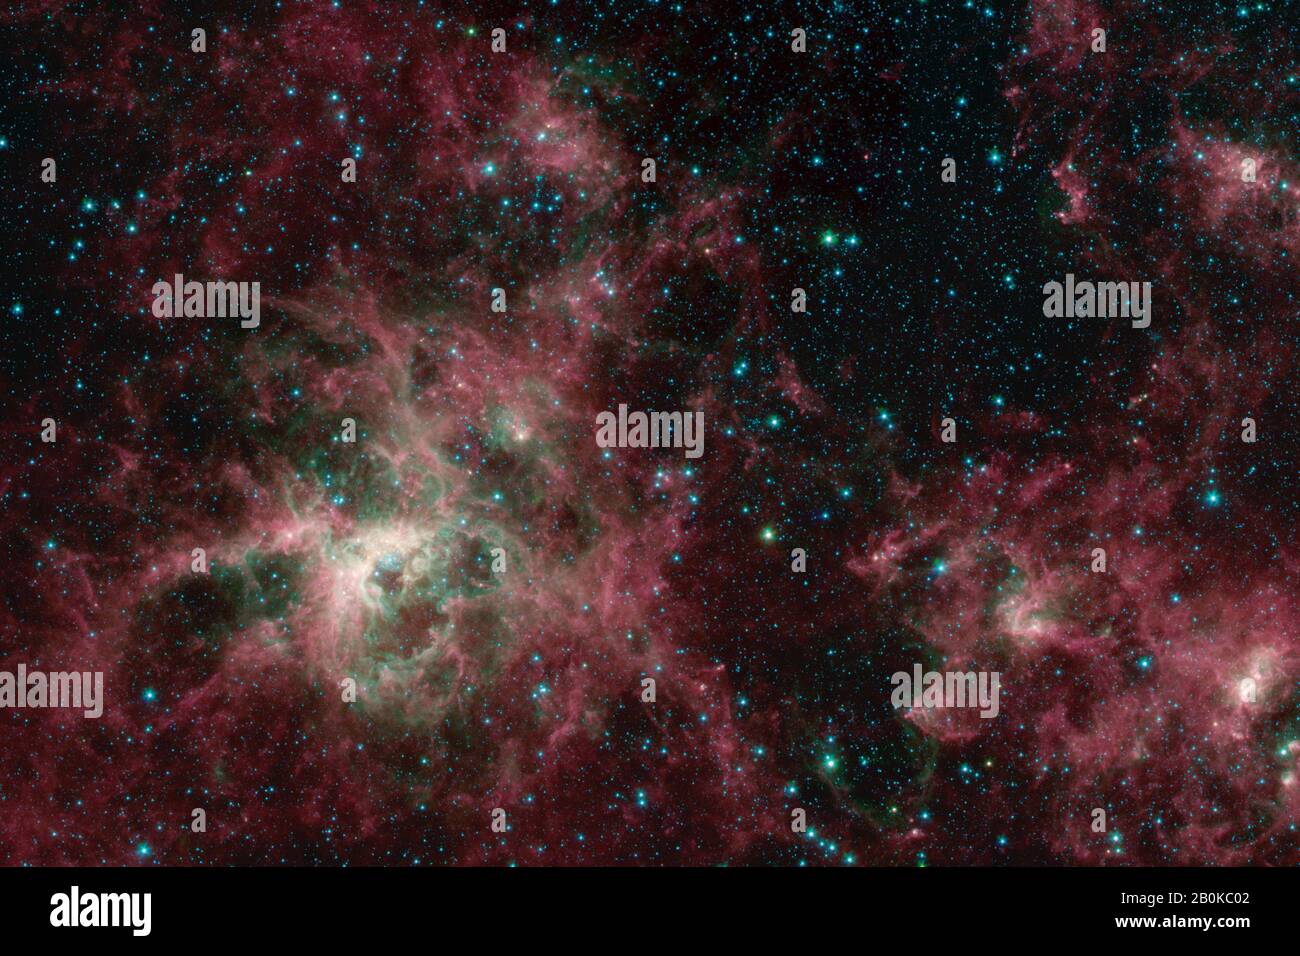 Washington, Stati Uniti. 20th Feb, 2020. Questa immagine del telescopio spaziale Spitzer della NASA mostra la Tarantula Nebula in tre lunghezze d'onda di luce infrarossa, ciascuna rappresentata da un colore diverso. La Tarantula Nebula è stata uno dei primi obiettivi studiati dall'osservatorio a infrarossi dopo il suo lancio nel 2003, e il telescopio l'ha rivisitata molte volte da allora. Ora che Spitzer è stato ritirato il 30 gennaio 2020, gli scienziati hanno generato una nuova visione della nebulosa dai dati Spitzer. NASA/UPI Credit: UPI/Alamy Live News Foto Stock